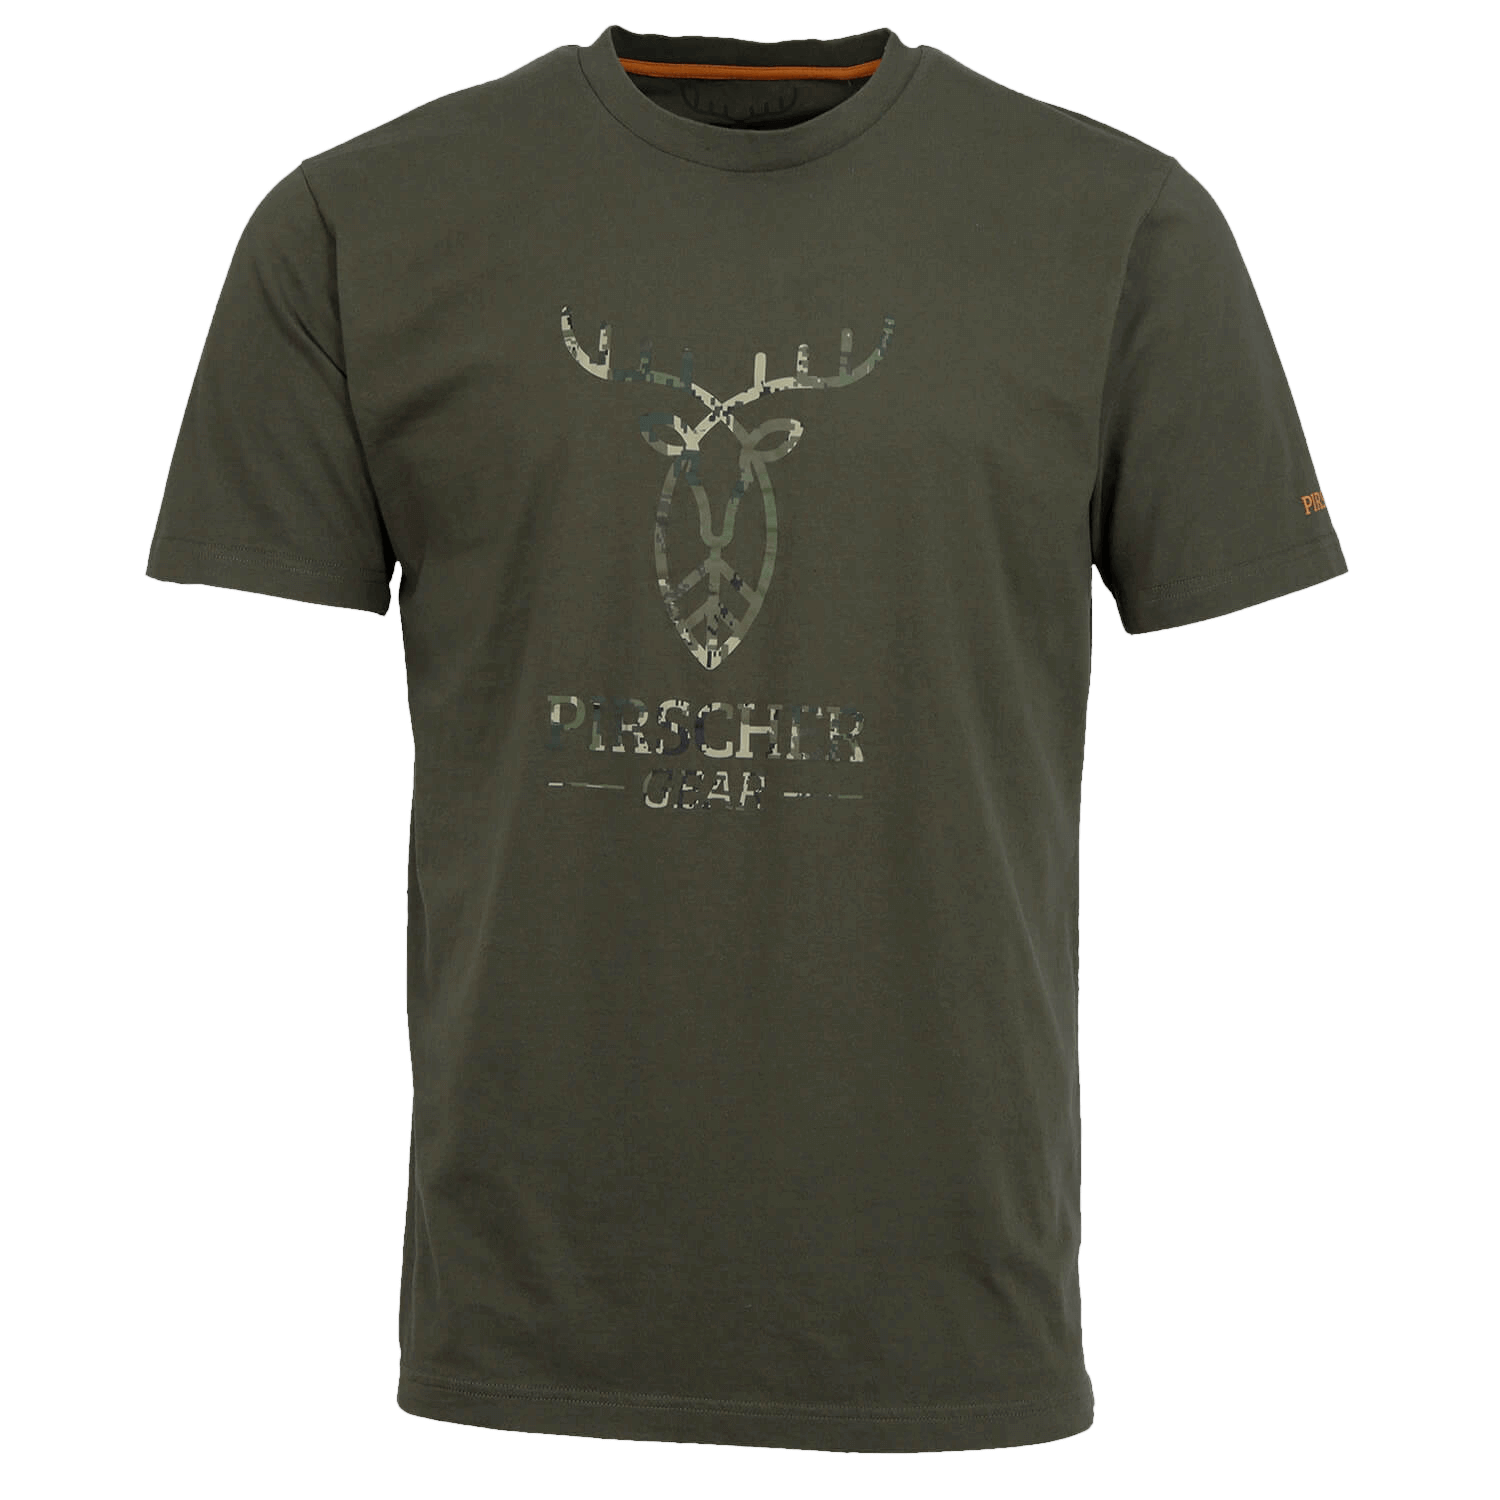  Pirscher Gear T-Shirt Full Logo (Optimax) - Cadeaus voor jagers